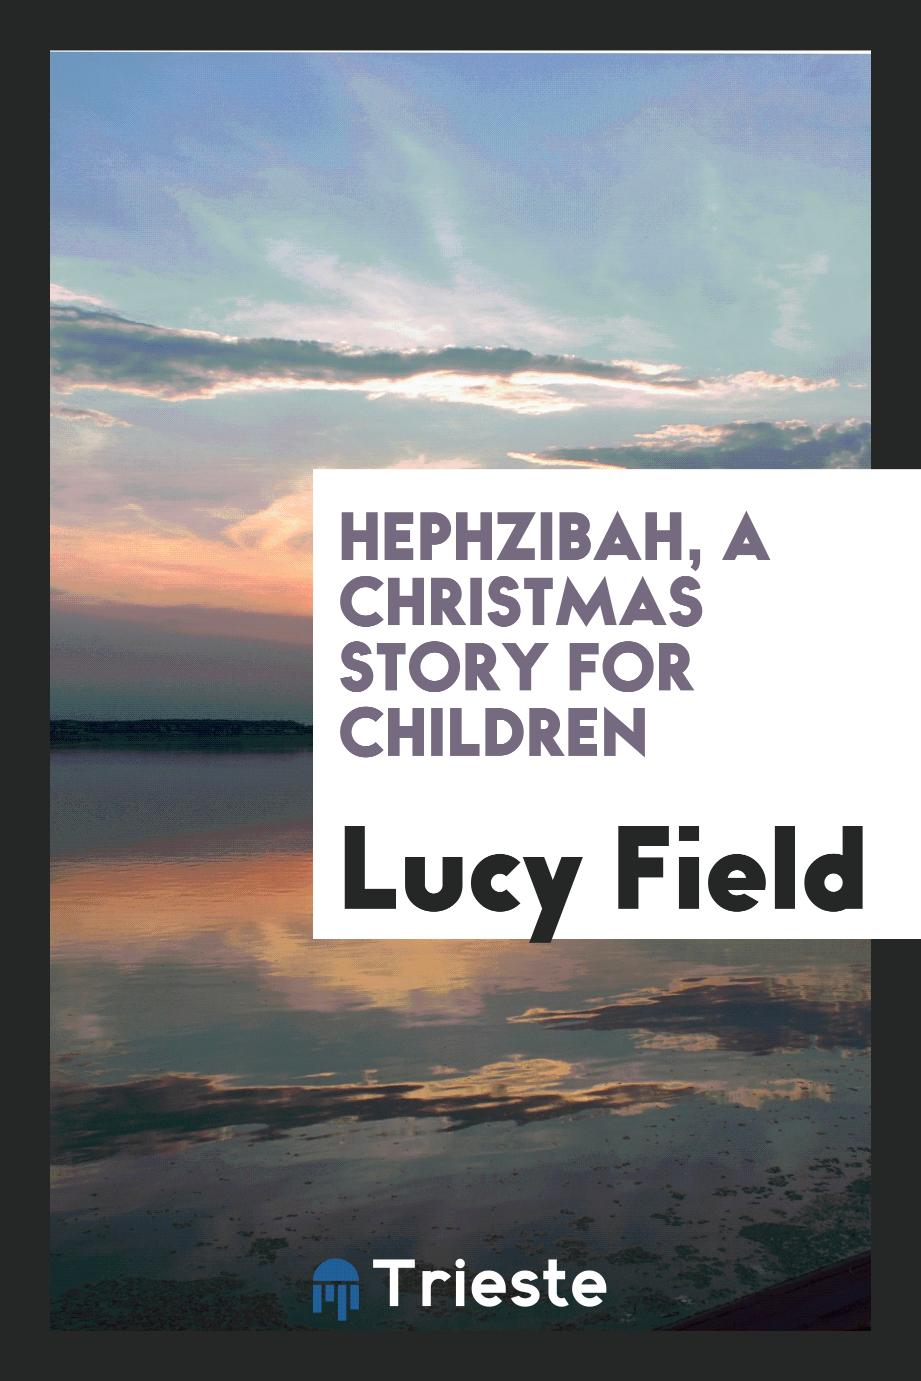 Hephzibah, a Christmas story for children